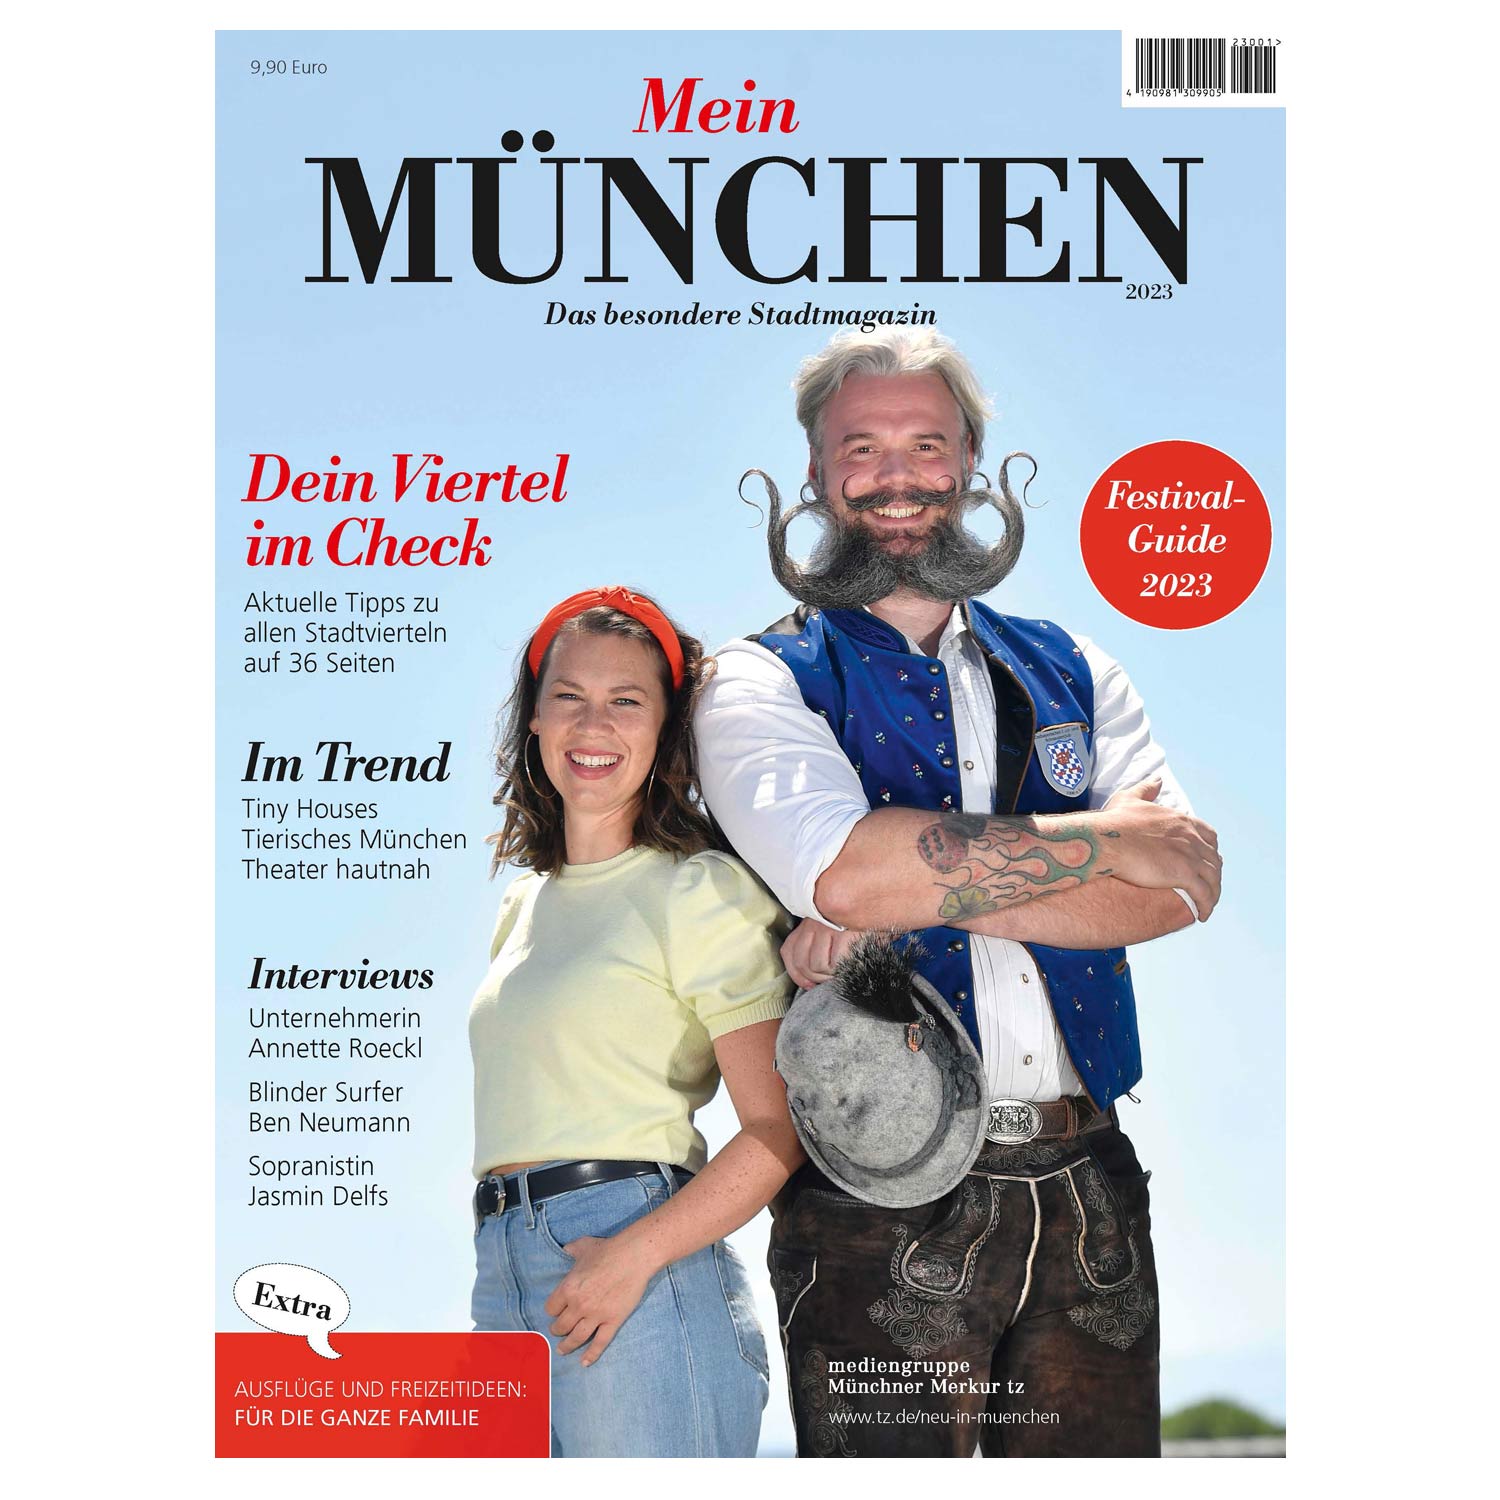 Magazin "Mein München 2023" Münchner Merkur - bavariashop - mei LebensGfui